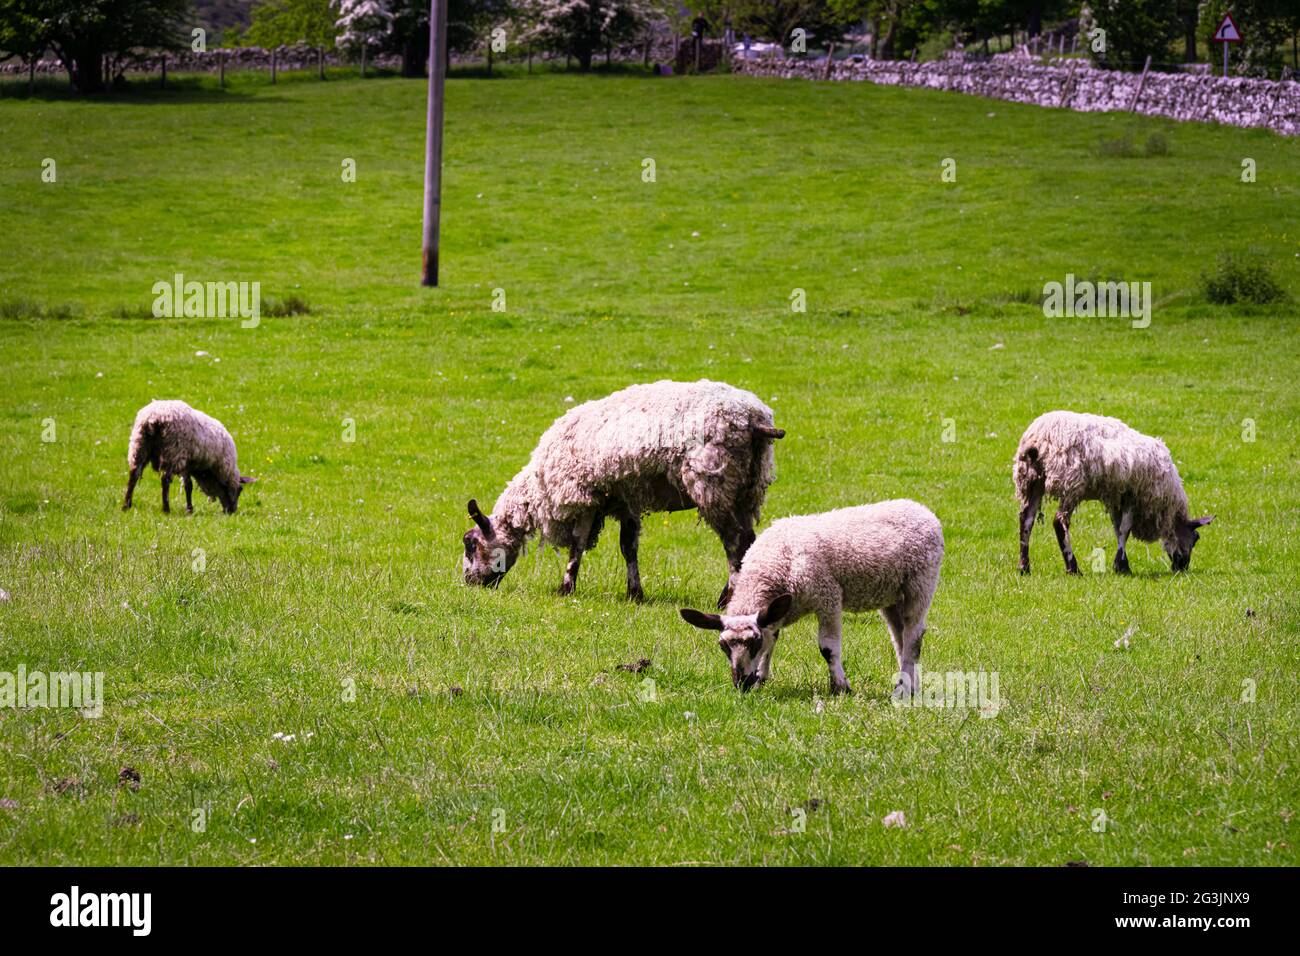 Moutons aux oreilles longues et piquées dans un champ, comté de Durham, Angleterre Banque D'Images